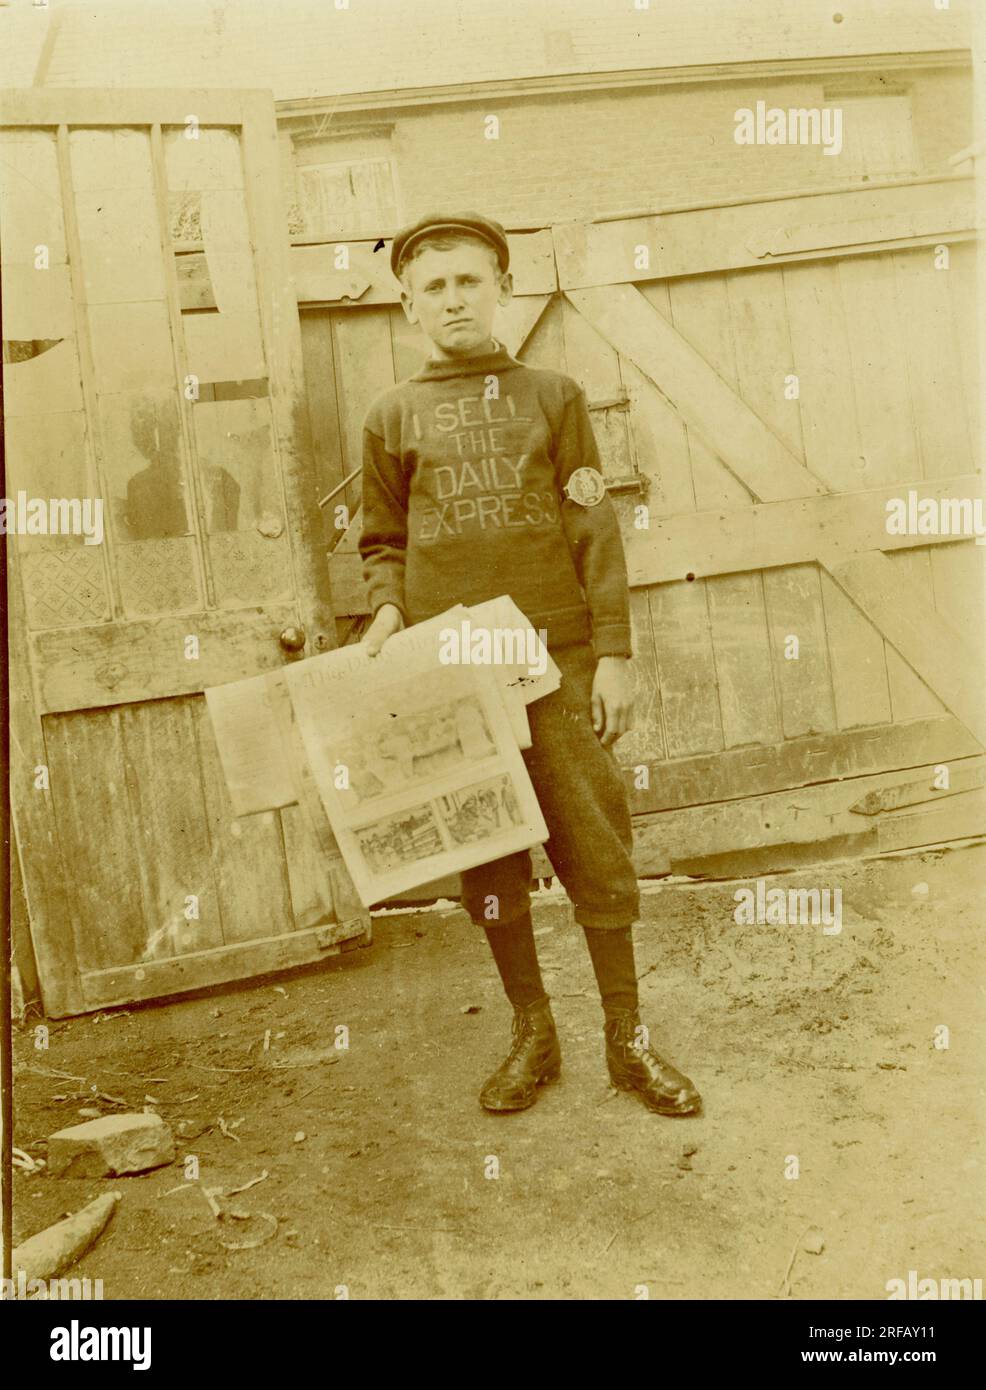 Originale Titanic-Postkarte eines Zeitungsverkäufers im Teenageralter, trägt einen "Ich verkaufe den Daily Express"-Pullover, aber mit der Daily Mirror-Lizenz Nr. 98. Möglicherweise Liverpool, etwa 1912, Großbritannien Stockfoto